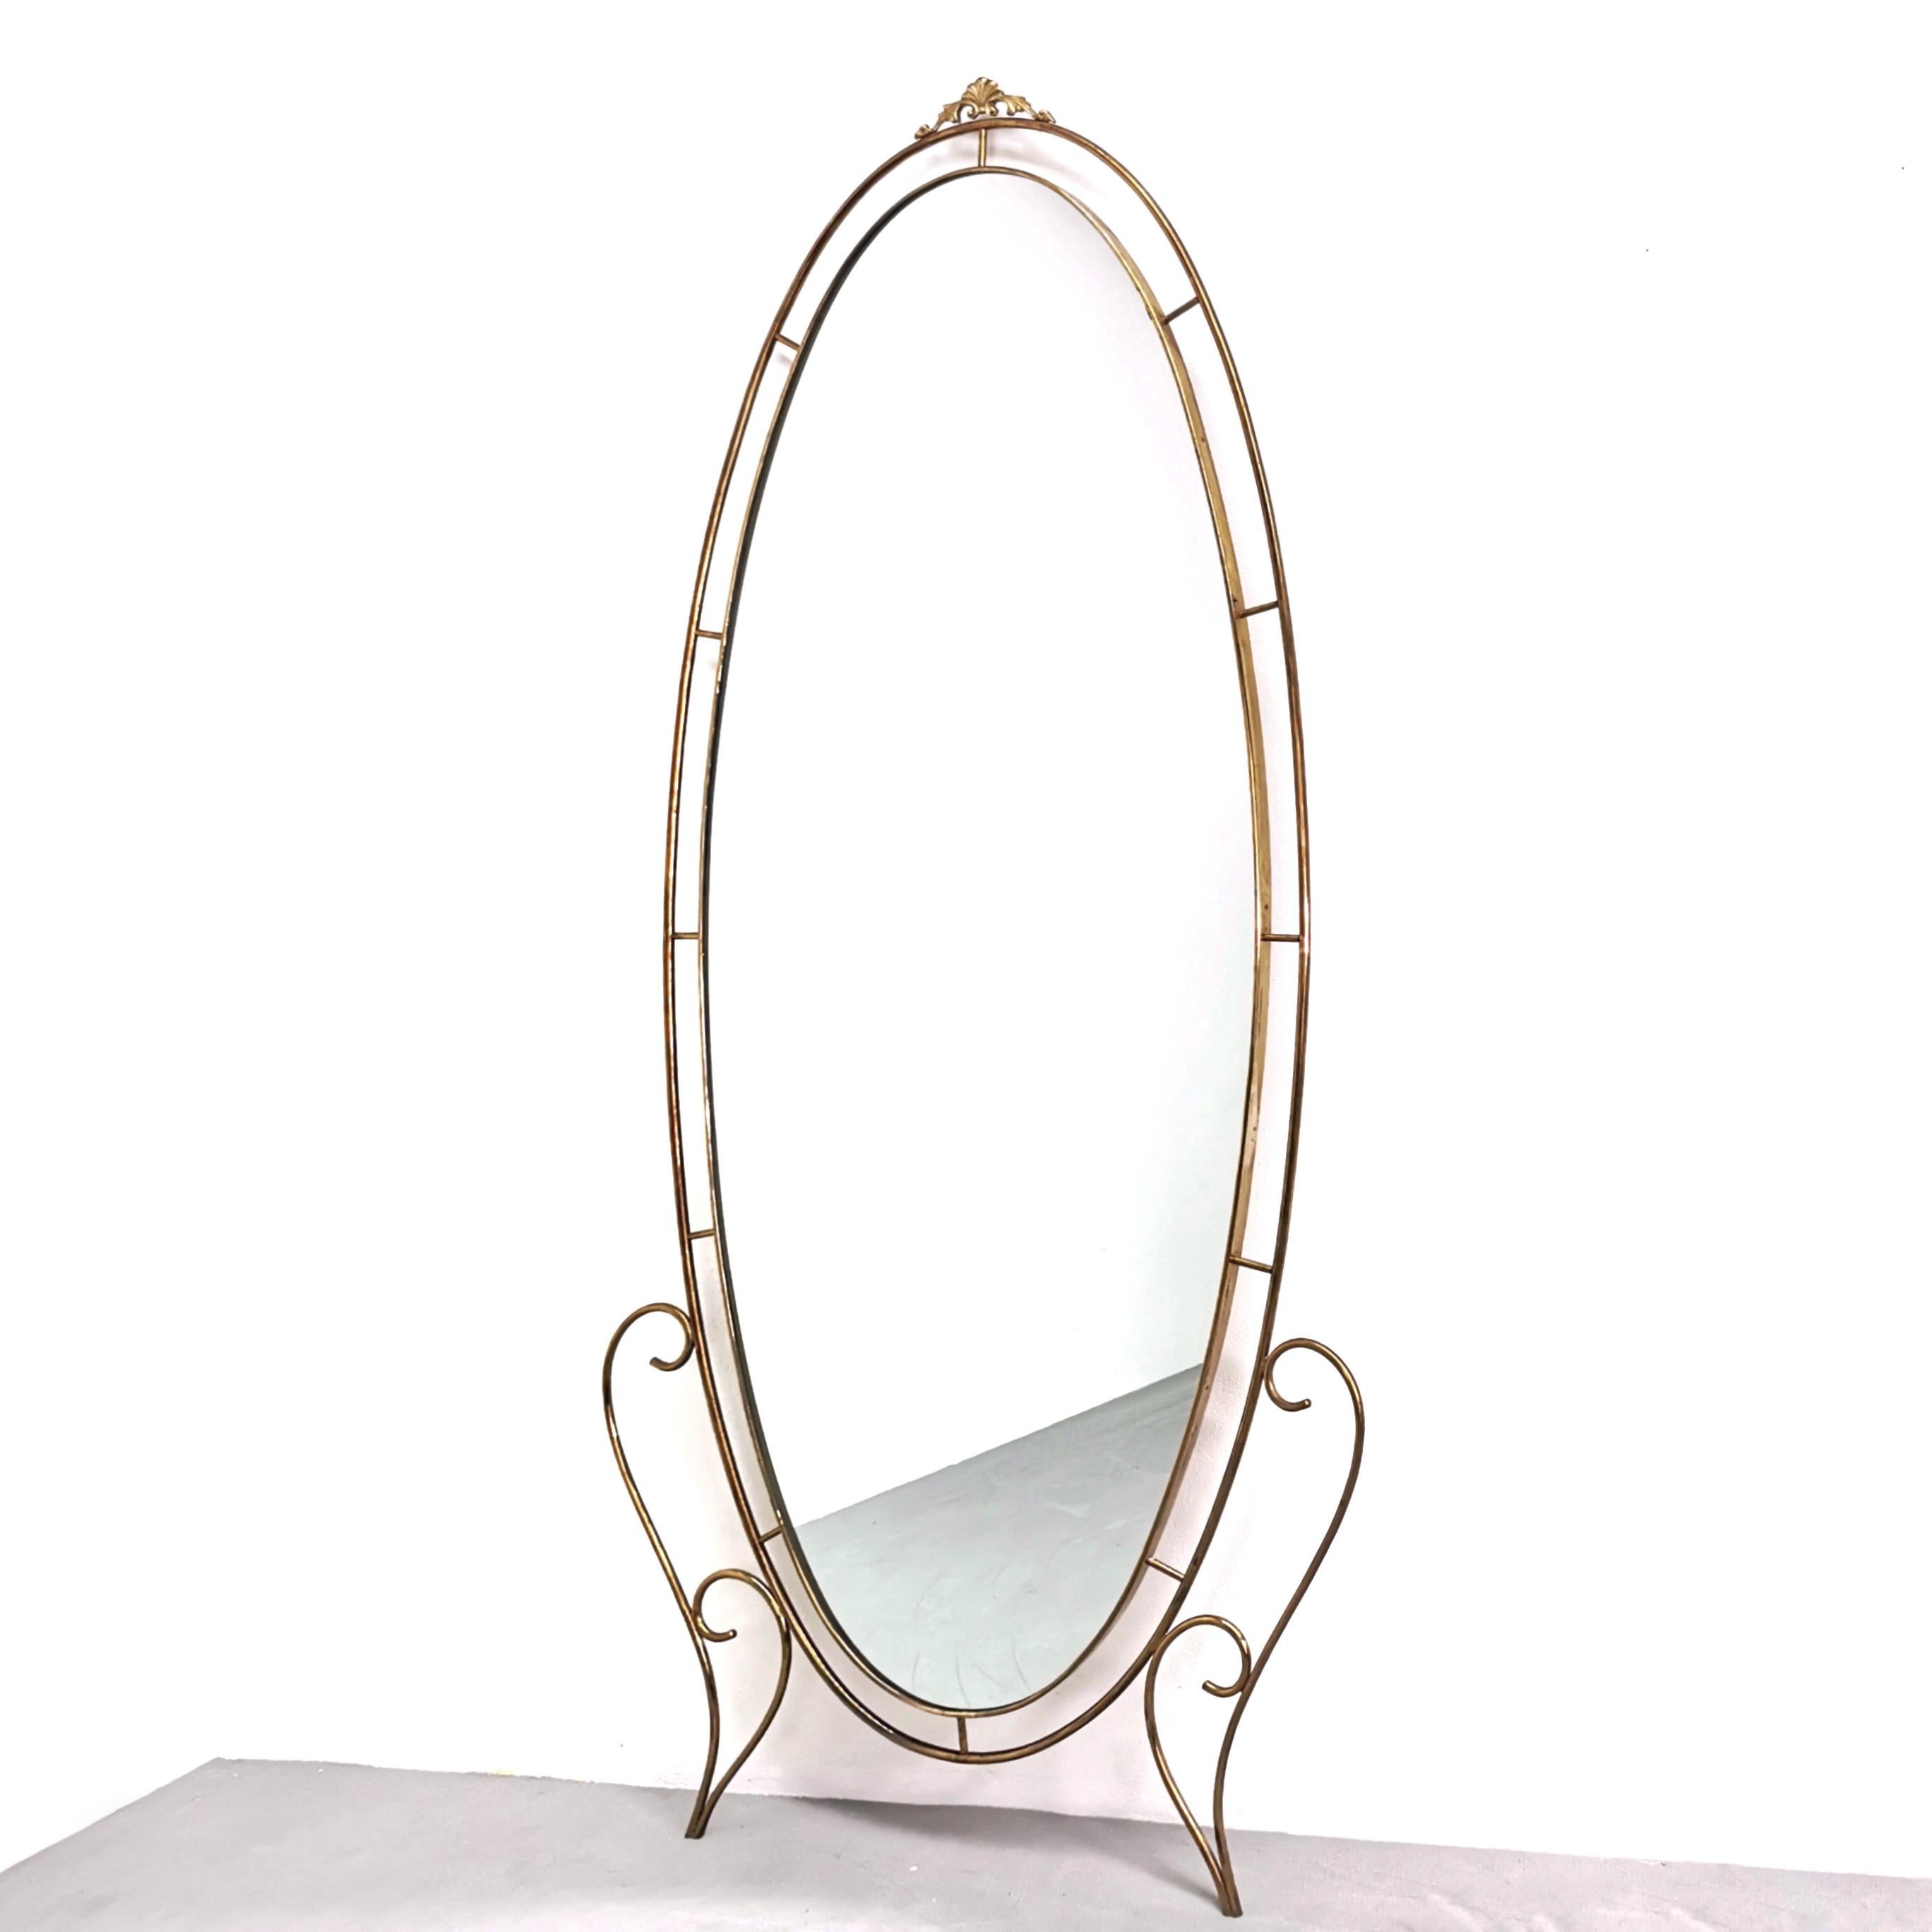 Grand miroir ovale vintage des années 1950 et 1960. Structure entièrement en laiton. Un objet de grande valeur décorative, capable de meubler à la fois un hall d'entrée important et de mettre en valeur l'espace de vie.